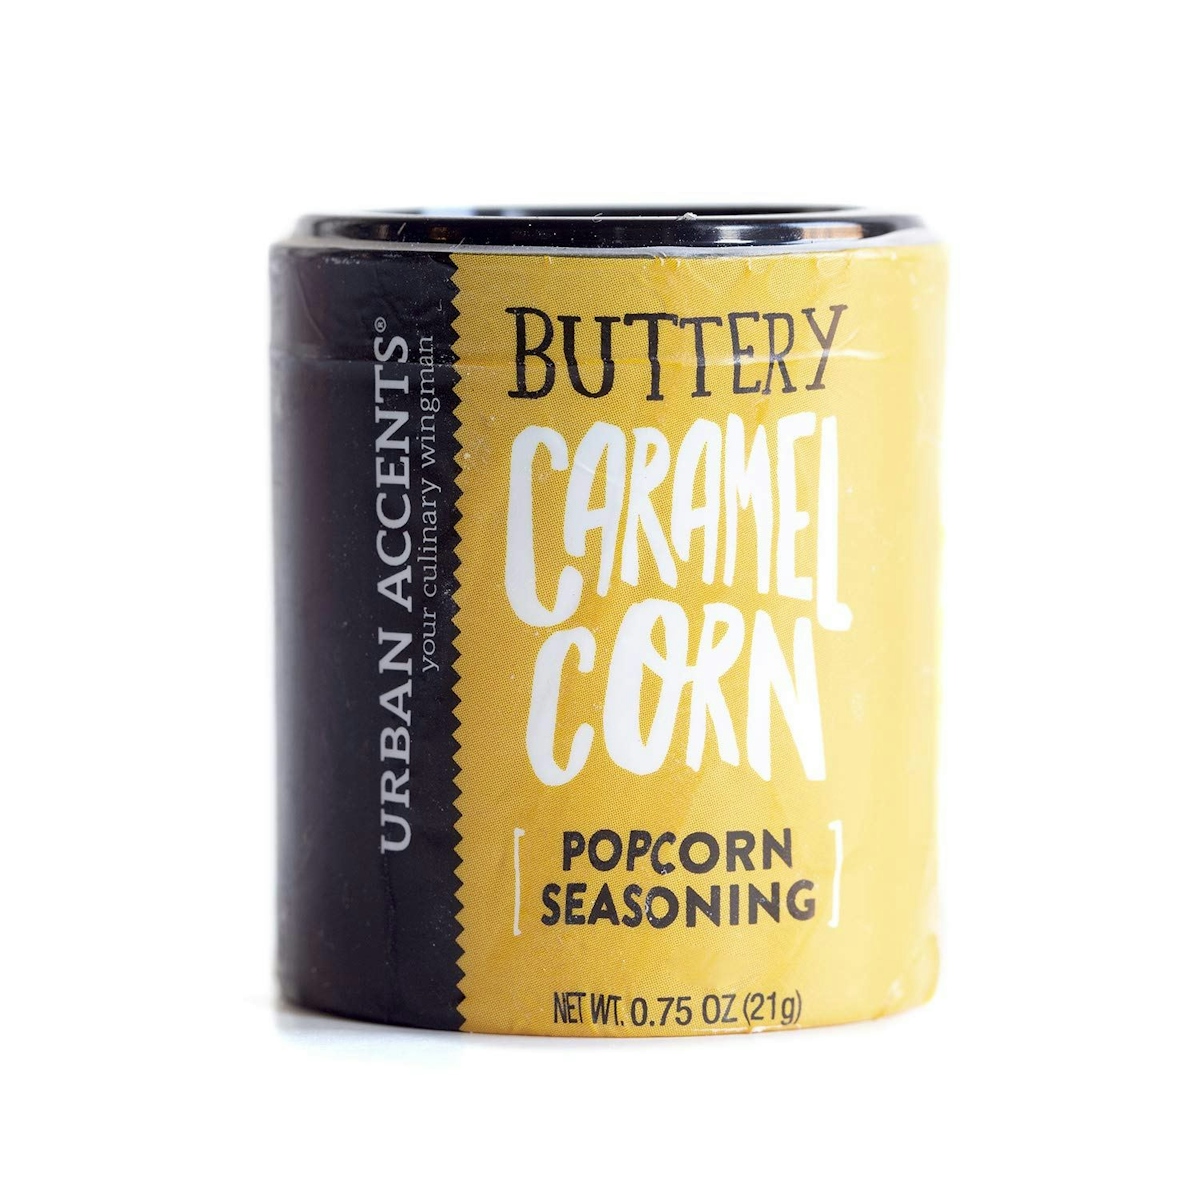 Buttery Caramel Corn